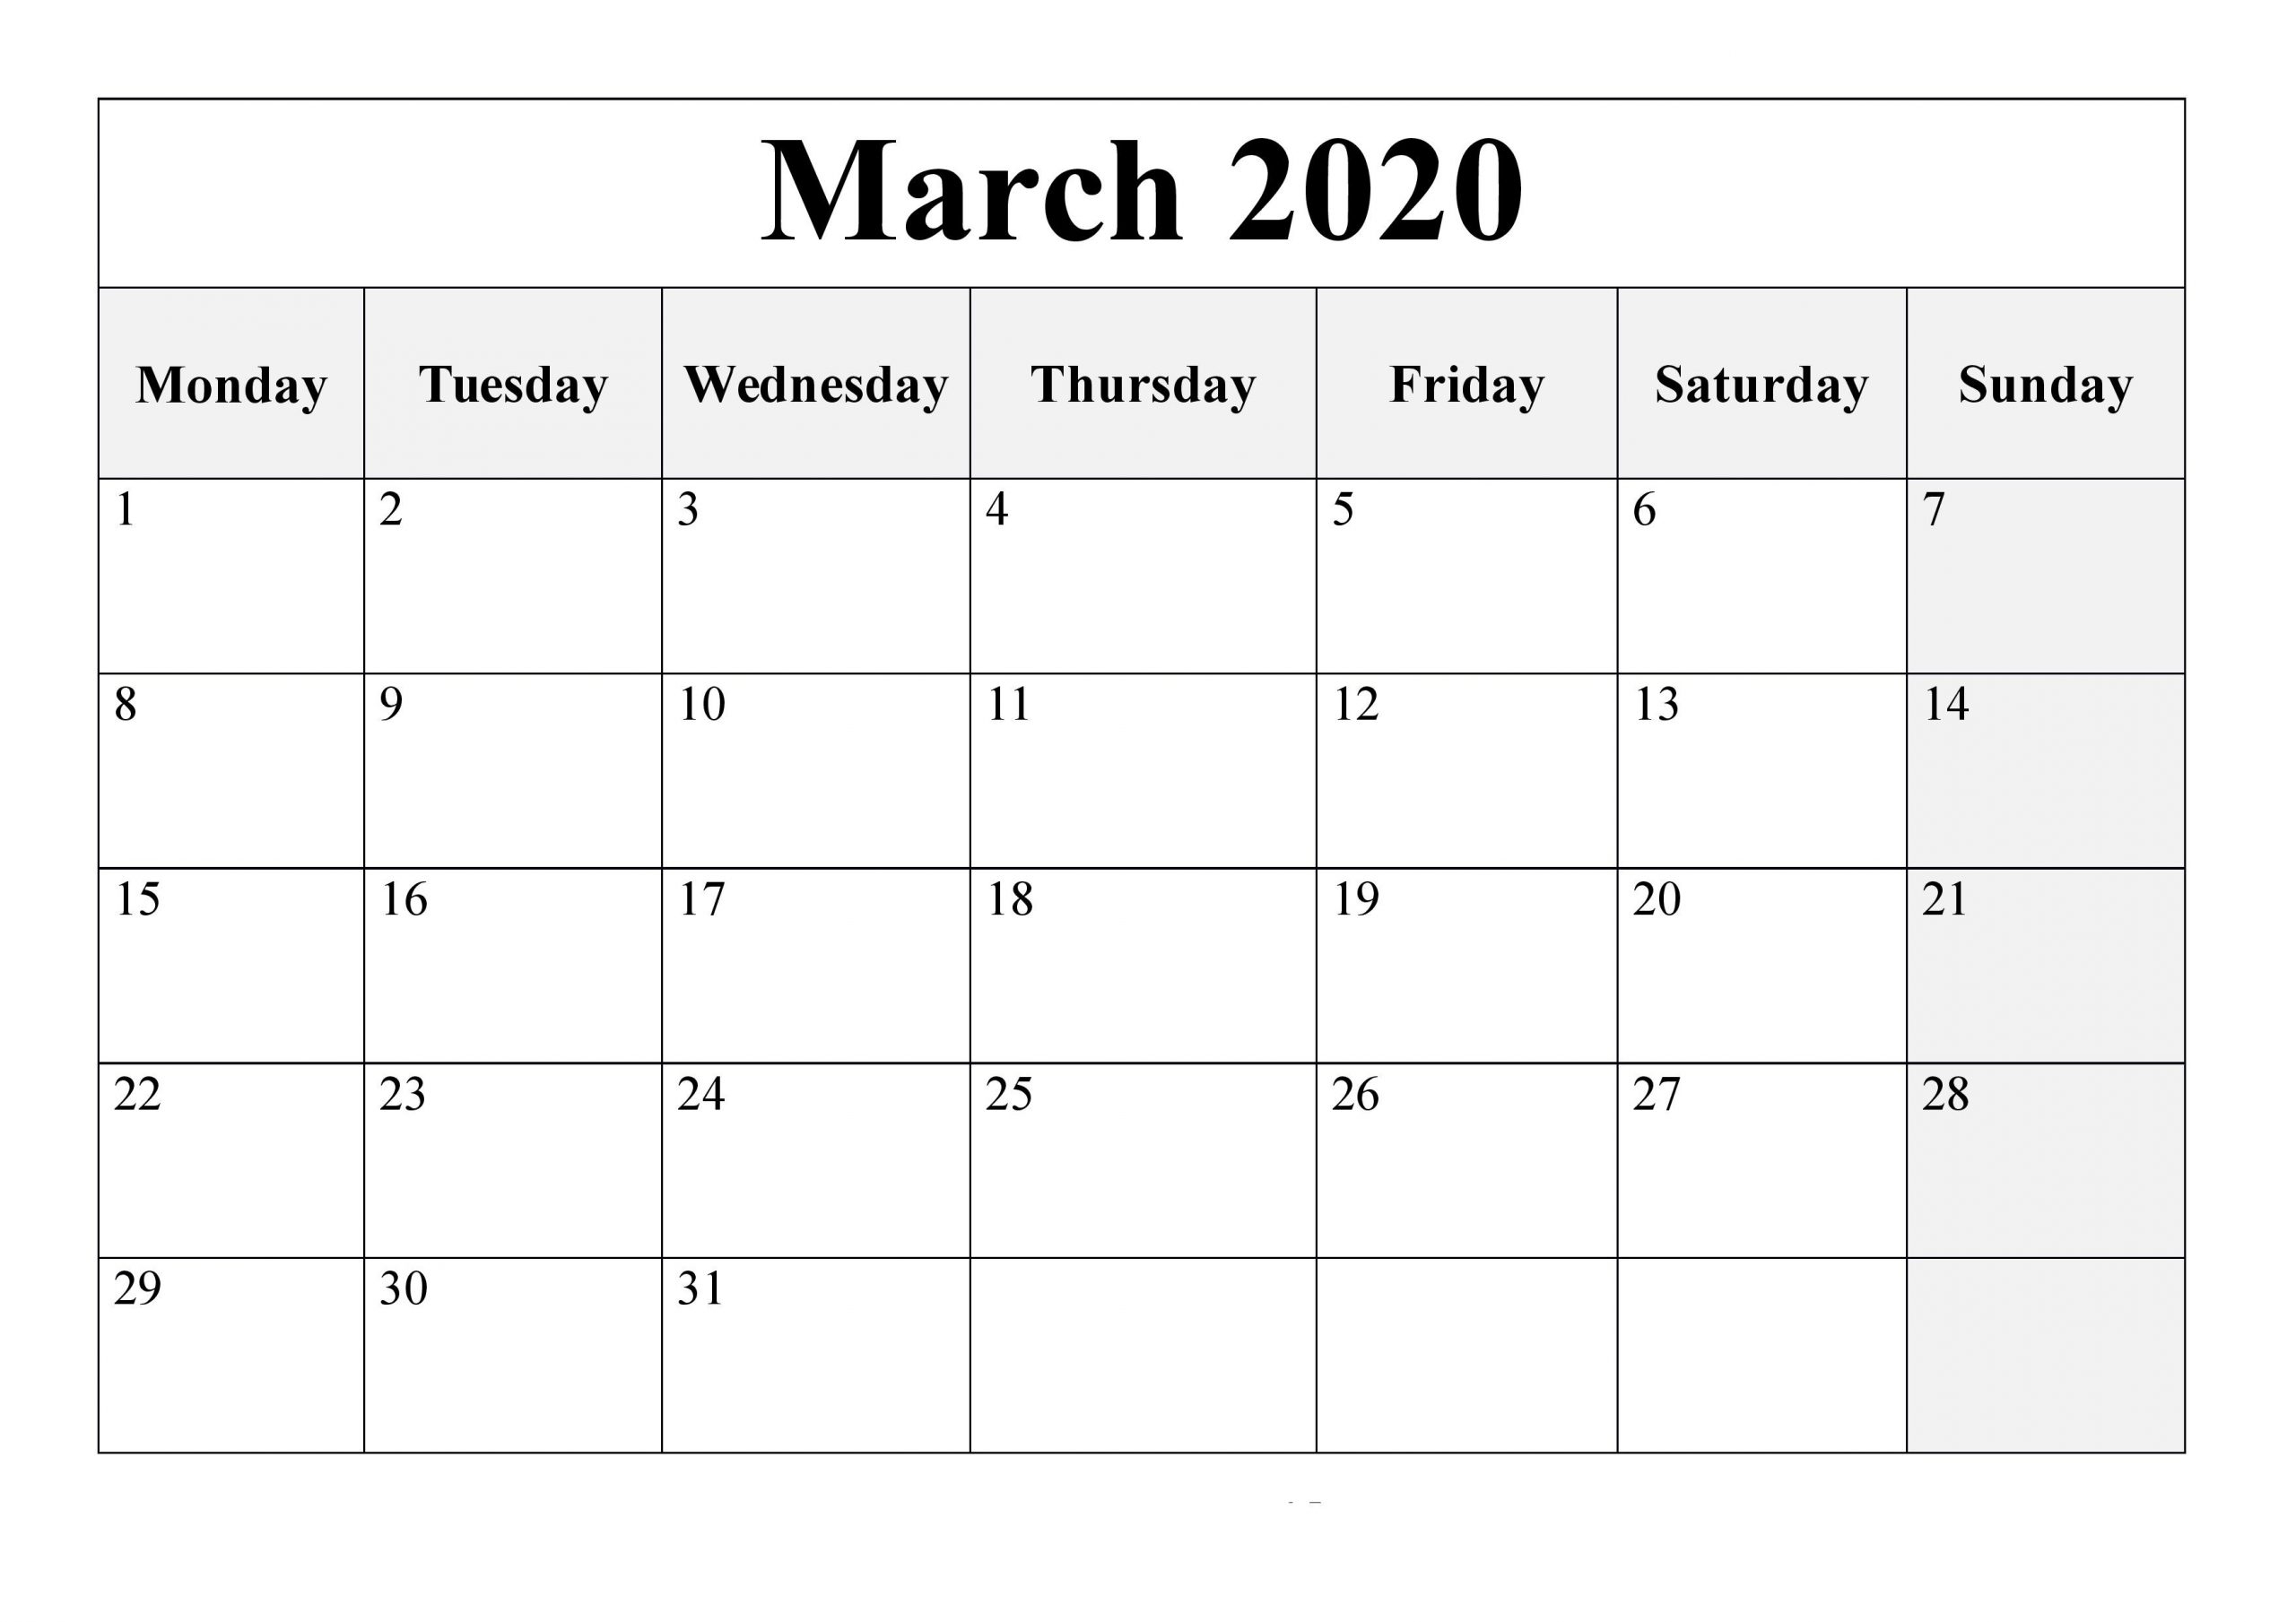 March 2020 Printable Calendar Waterproof Word Free - Free with Free Printable Calendar 2020 Waterproof